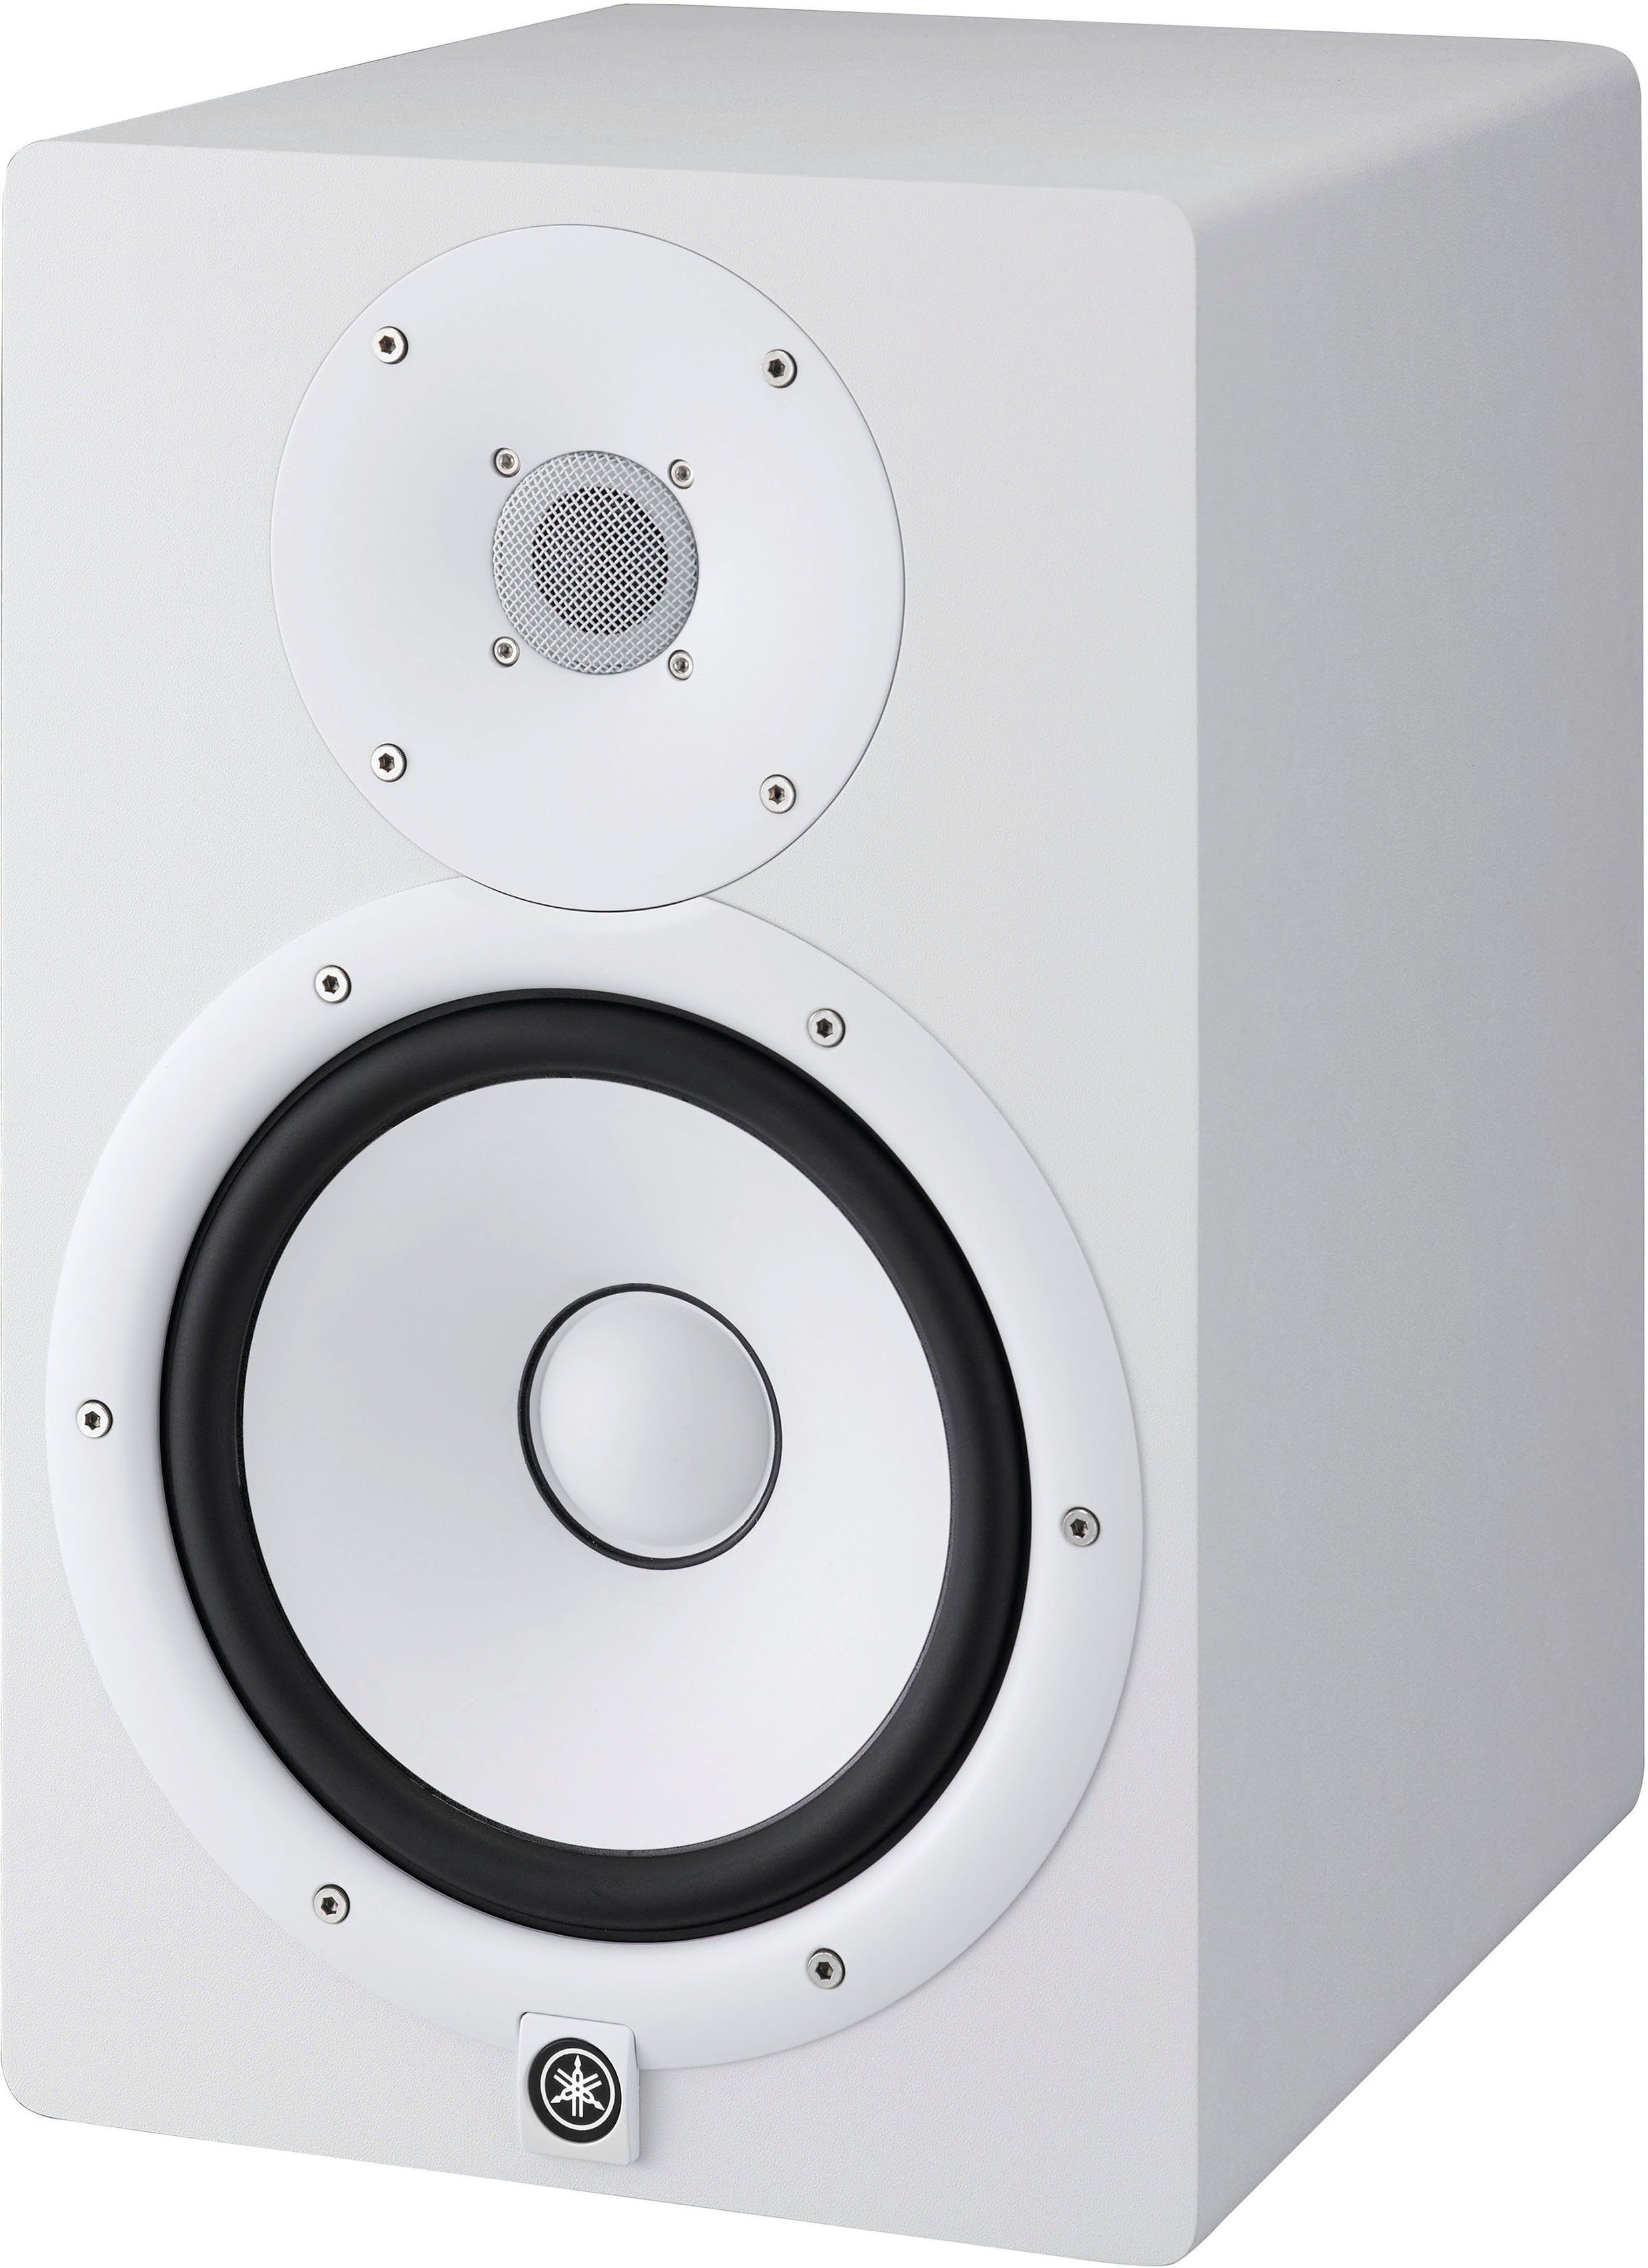 Yamaha Studio und Wiedergabe) Monitor (hochauflösender authentische Box Klang Lautsprecher HS8W